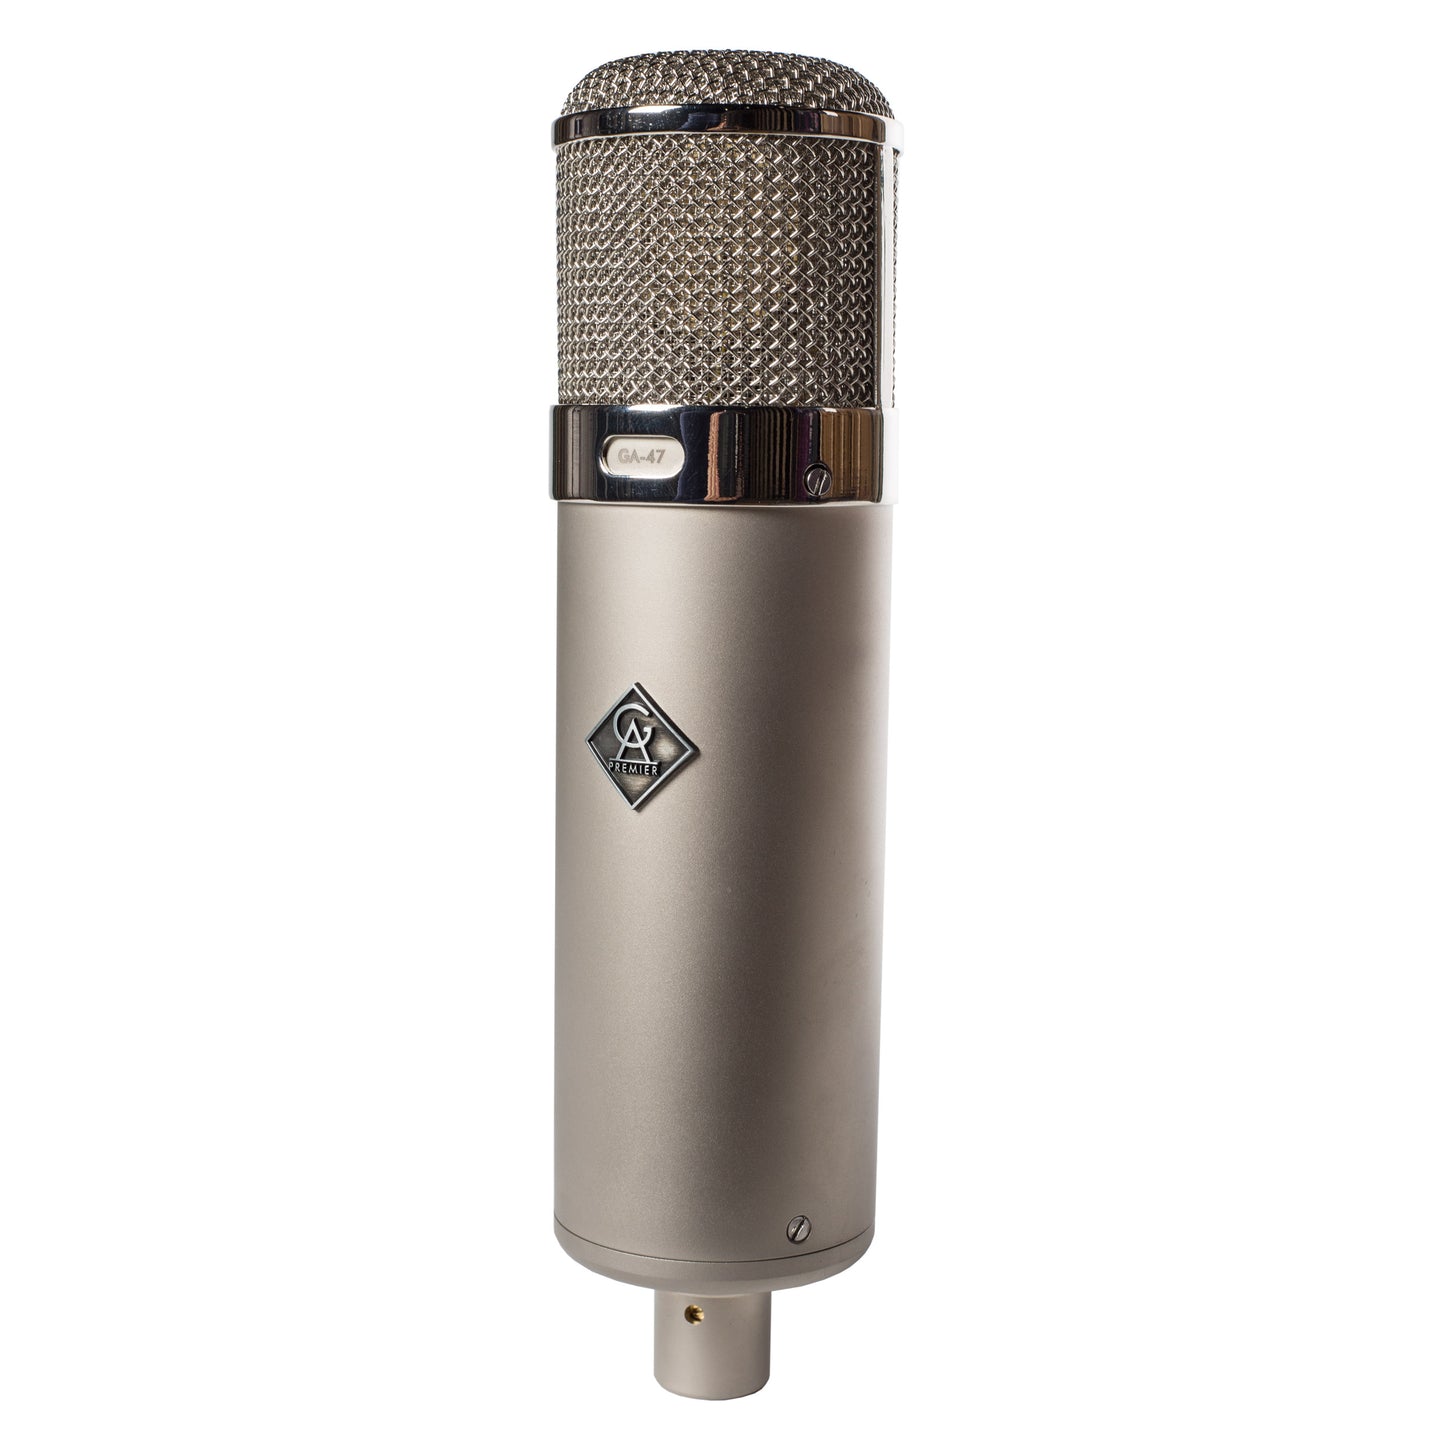 Golden Age Premier GA47 Handwired Microphone